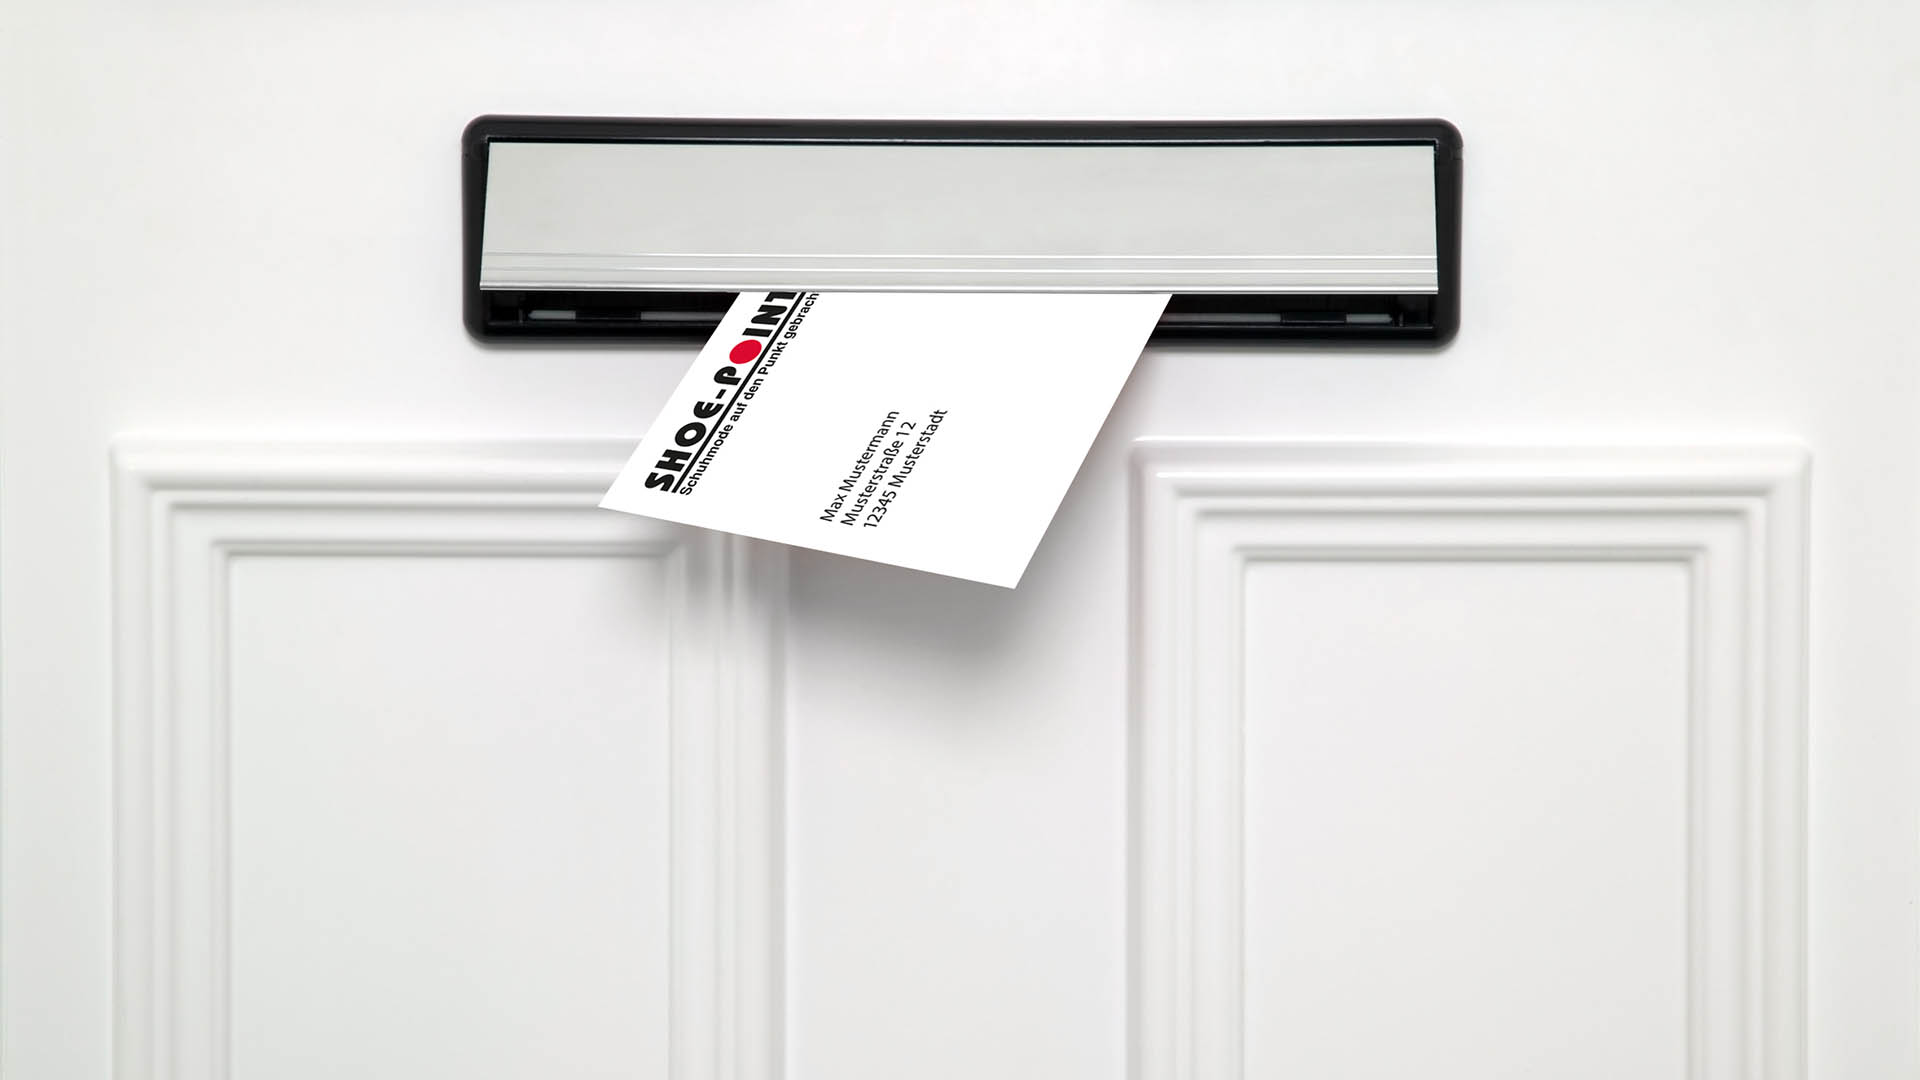 Scribble Werbeagentur in Geilenkirchen, Kreis Heinsberg, zeigt ein in einen Briefkasten eingeworfenes Mailing.